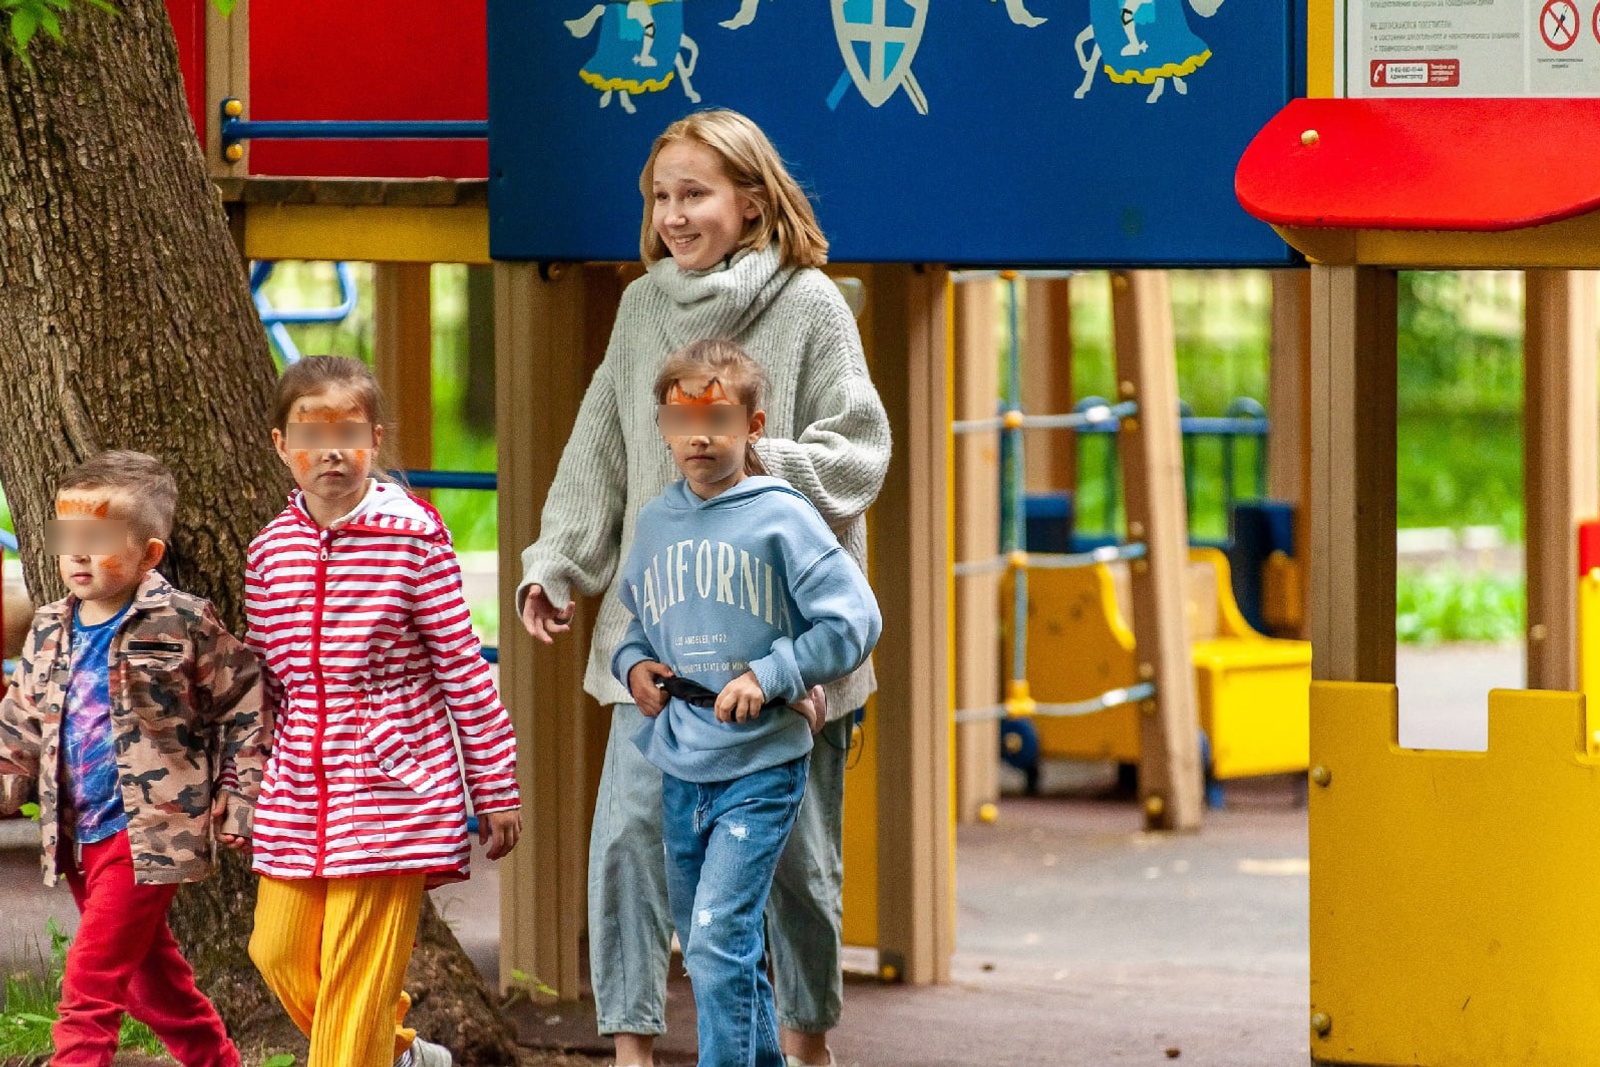 ЛизаАлерт» провел социальный эксперимент, как увести детей из парка 25 мая  2021 г - 26 мая 2021 - 59.ru